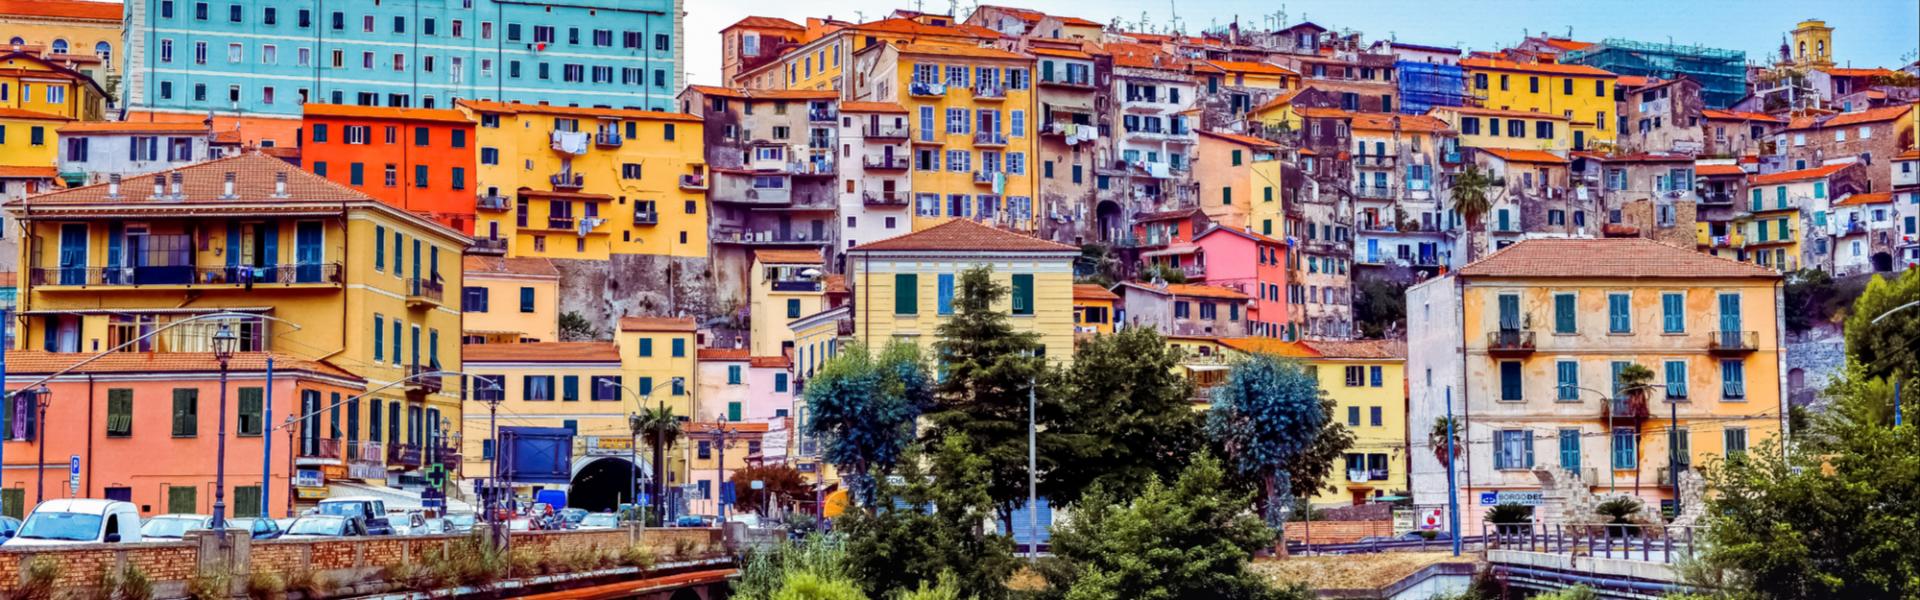 Find the perfect vacation home Ventimiglia - Casamundo